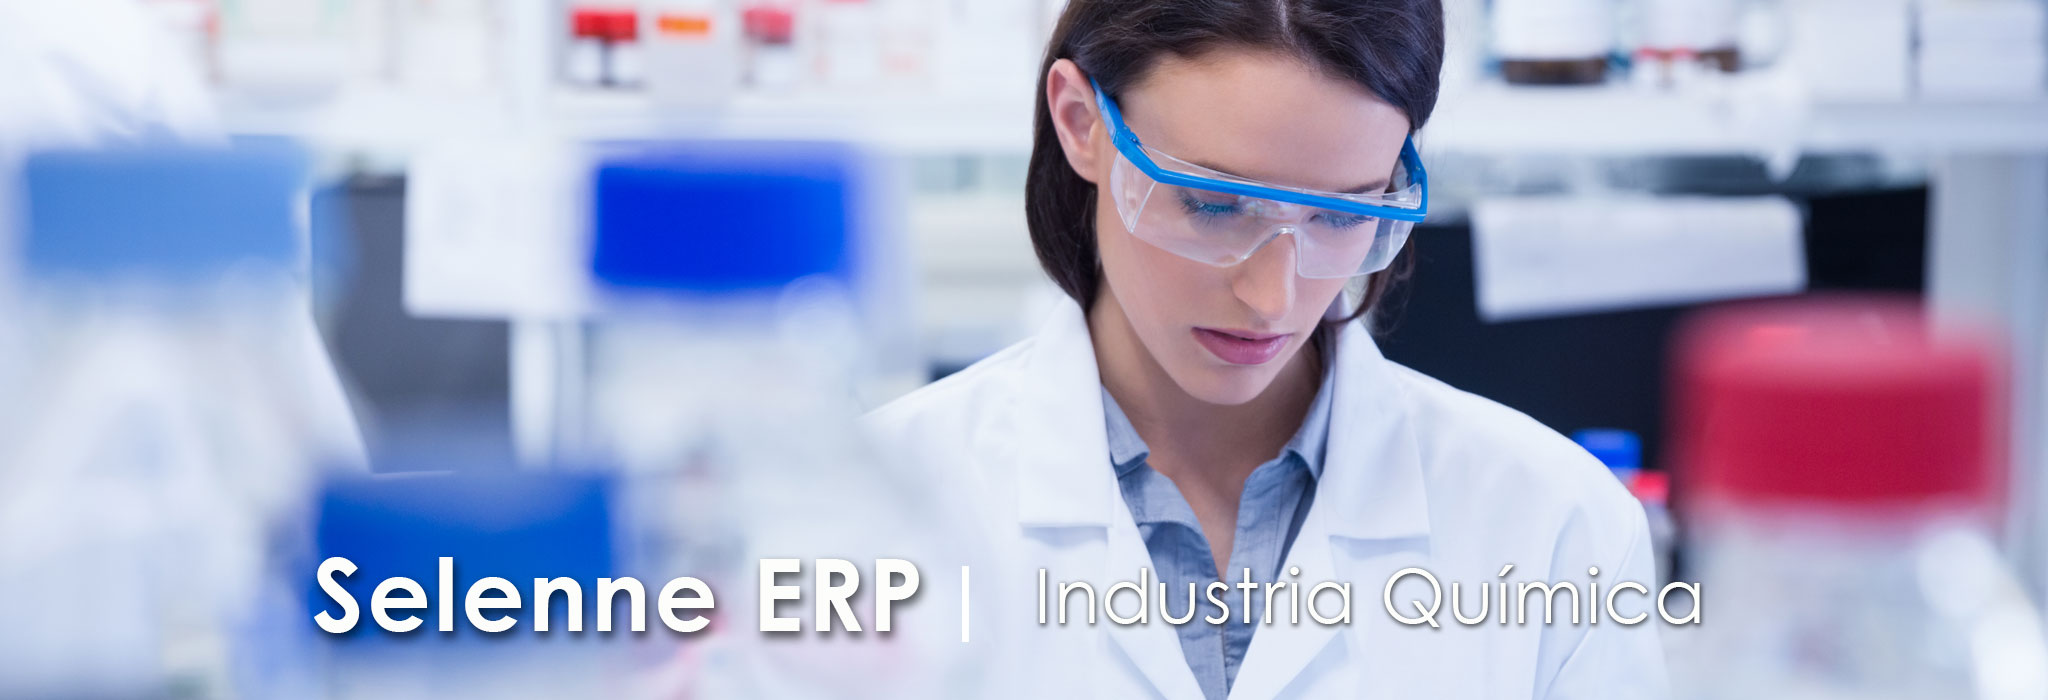 Selenne-ERP-industria-quimica-1